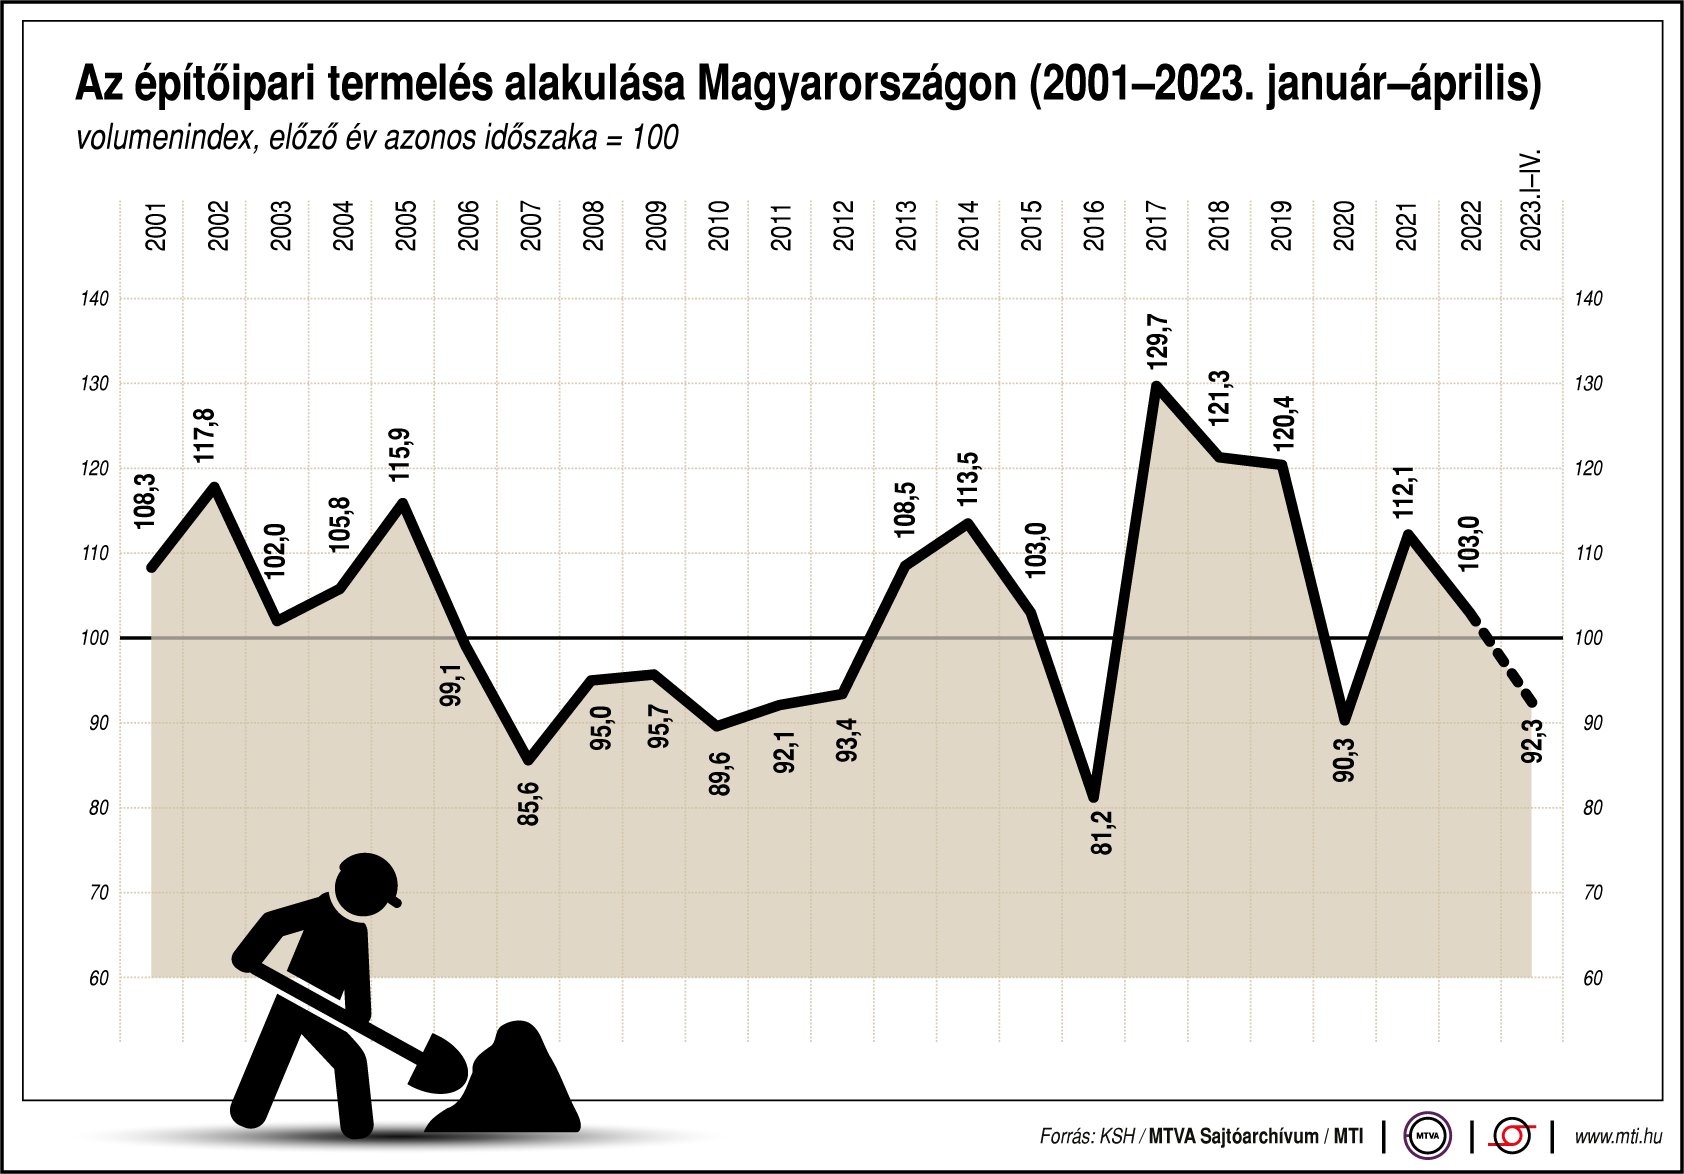 Azépítőipari termelés alakulása Magyarországon (2001-2023. január-április)á